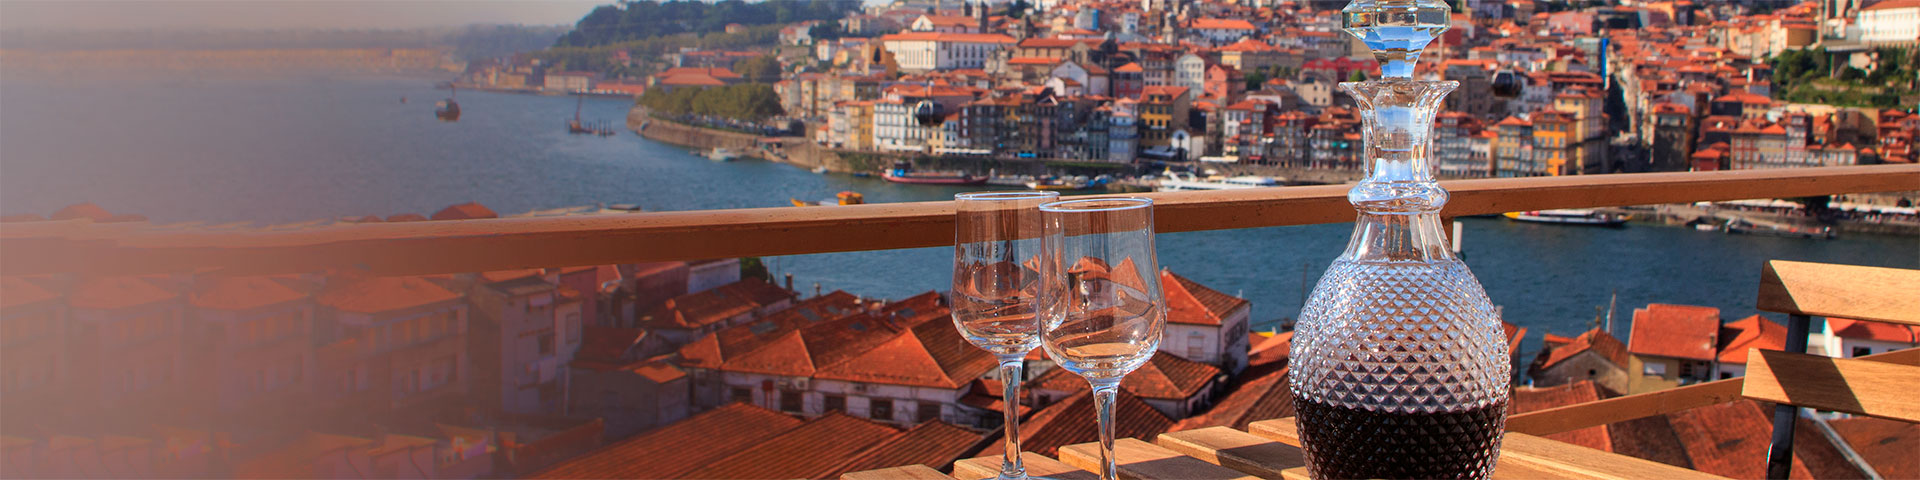 Übersetzungsbüro Portugiesisch: Tisch mit Portwein im Vordergrund und Blick auf den Fluss in Porto, Portugal.